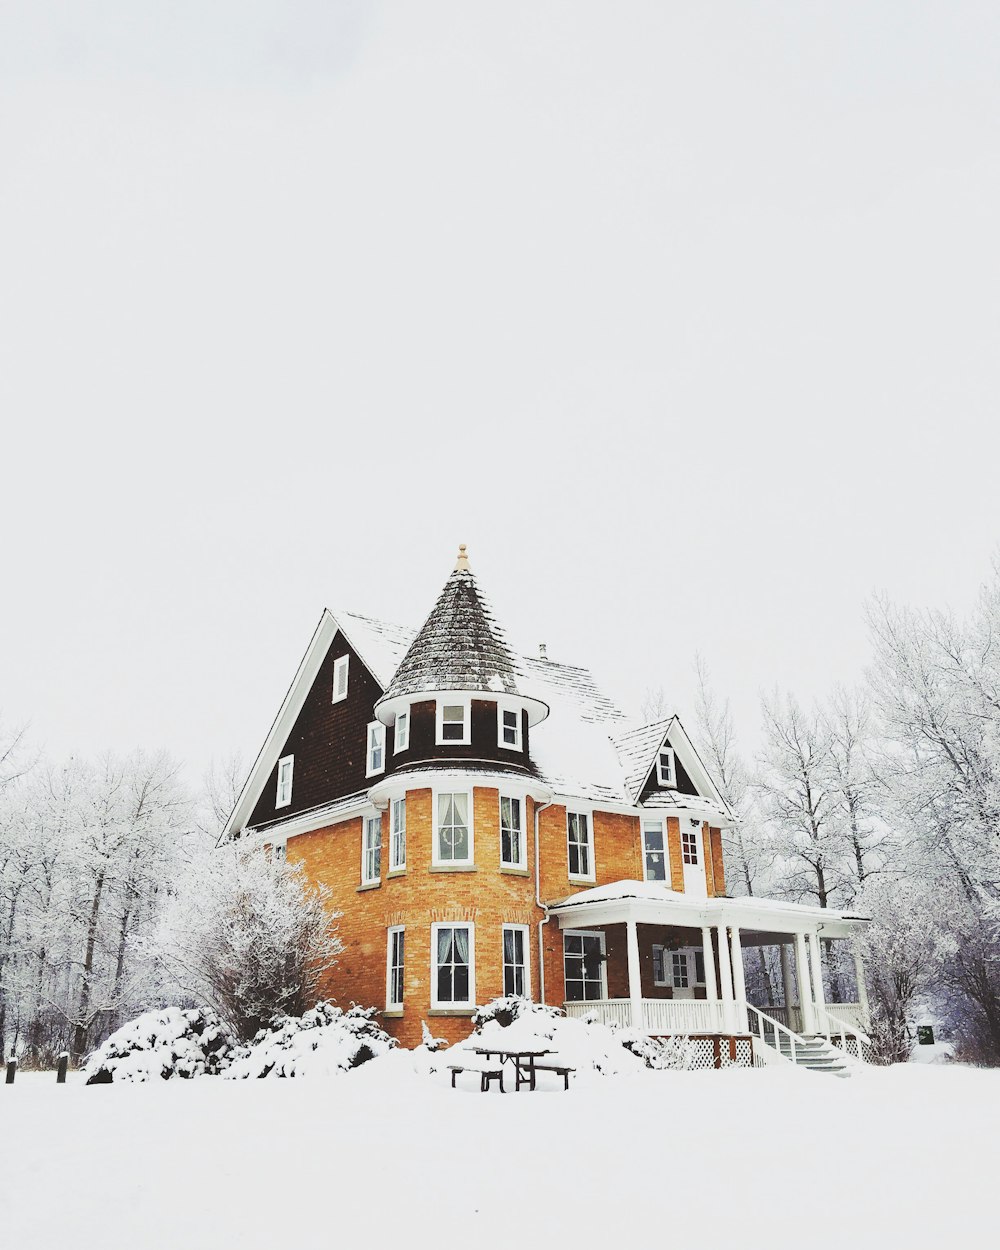 Casa de concreto laranja e cinza cercada por neve